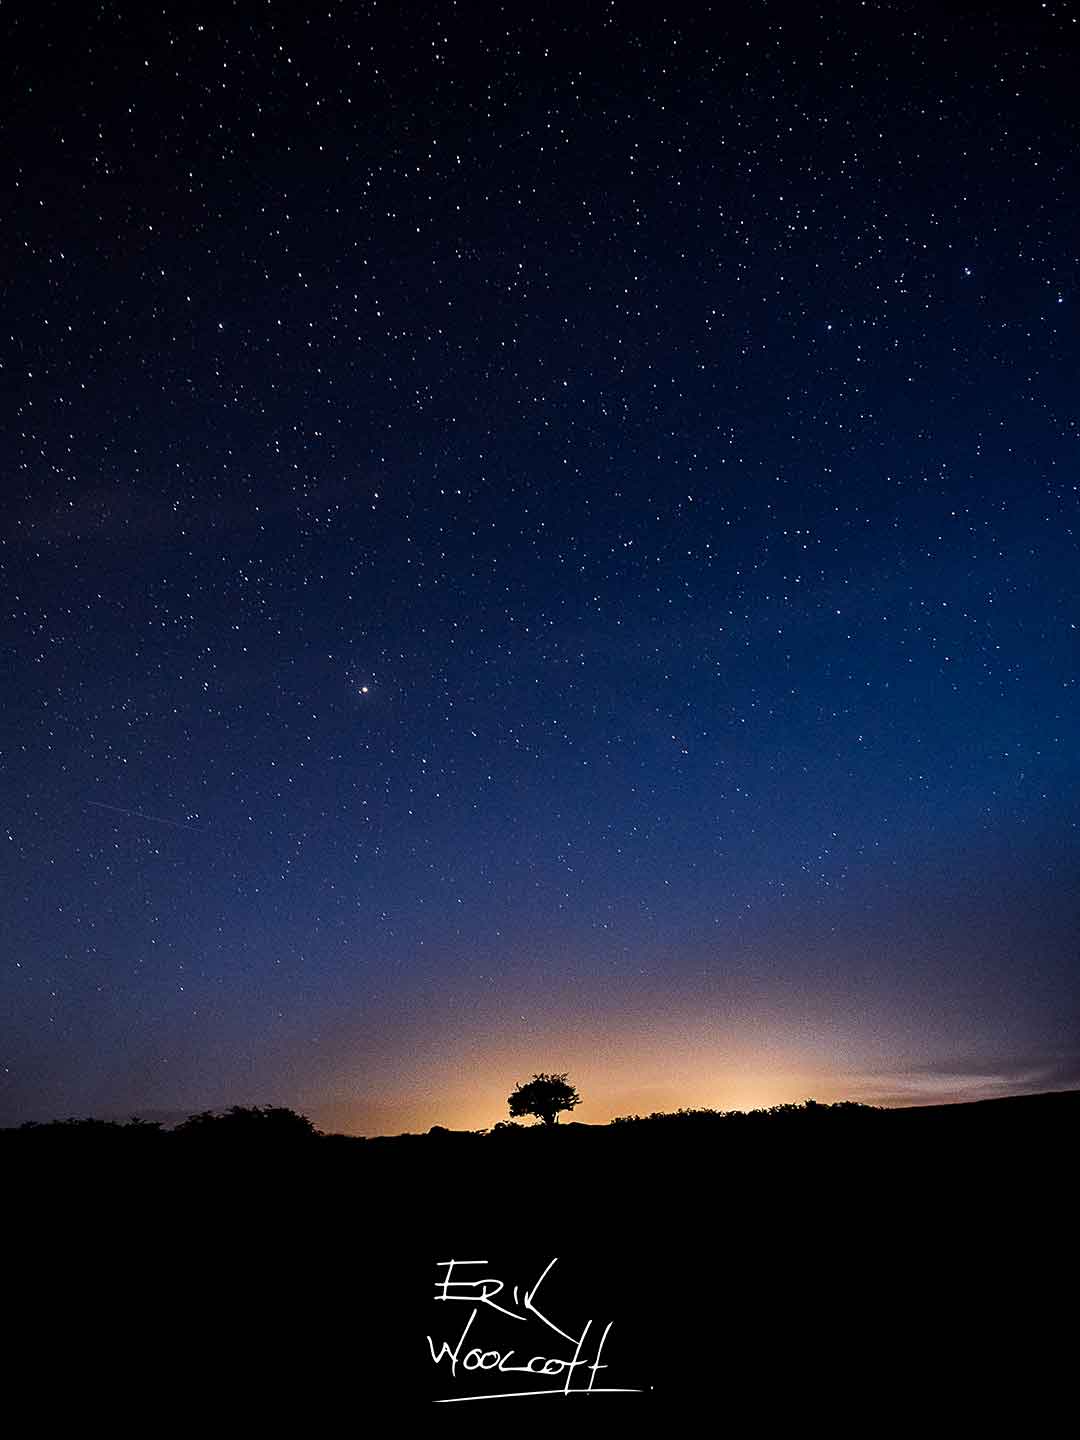 Dartmoor on a dark night